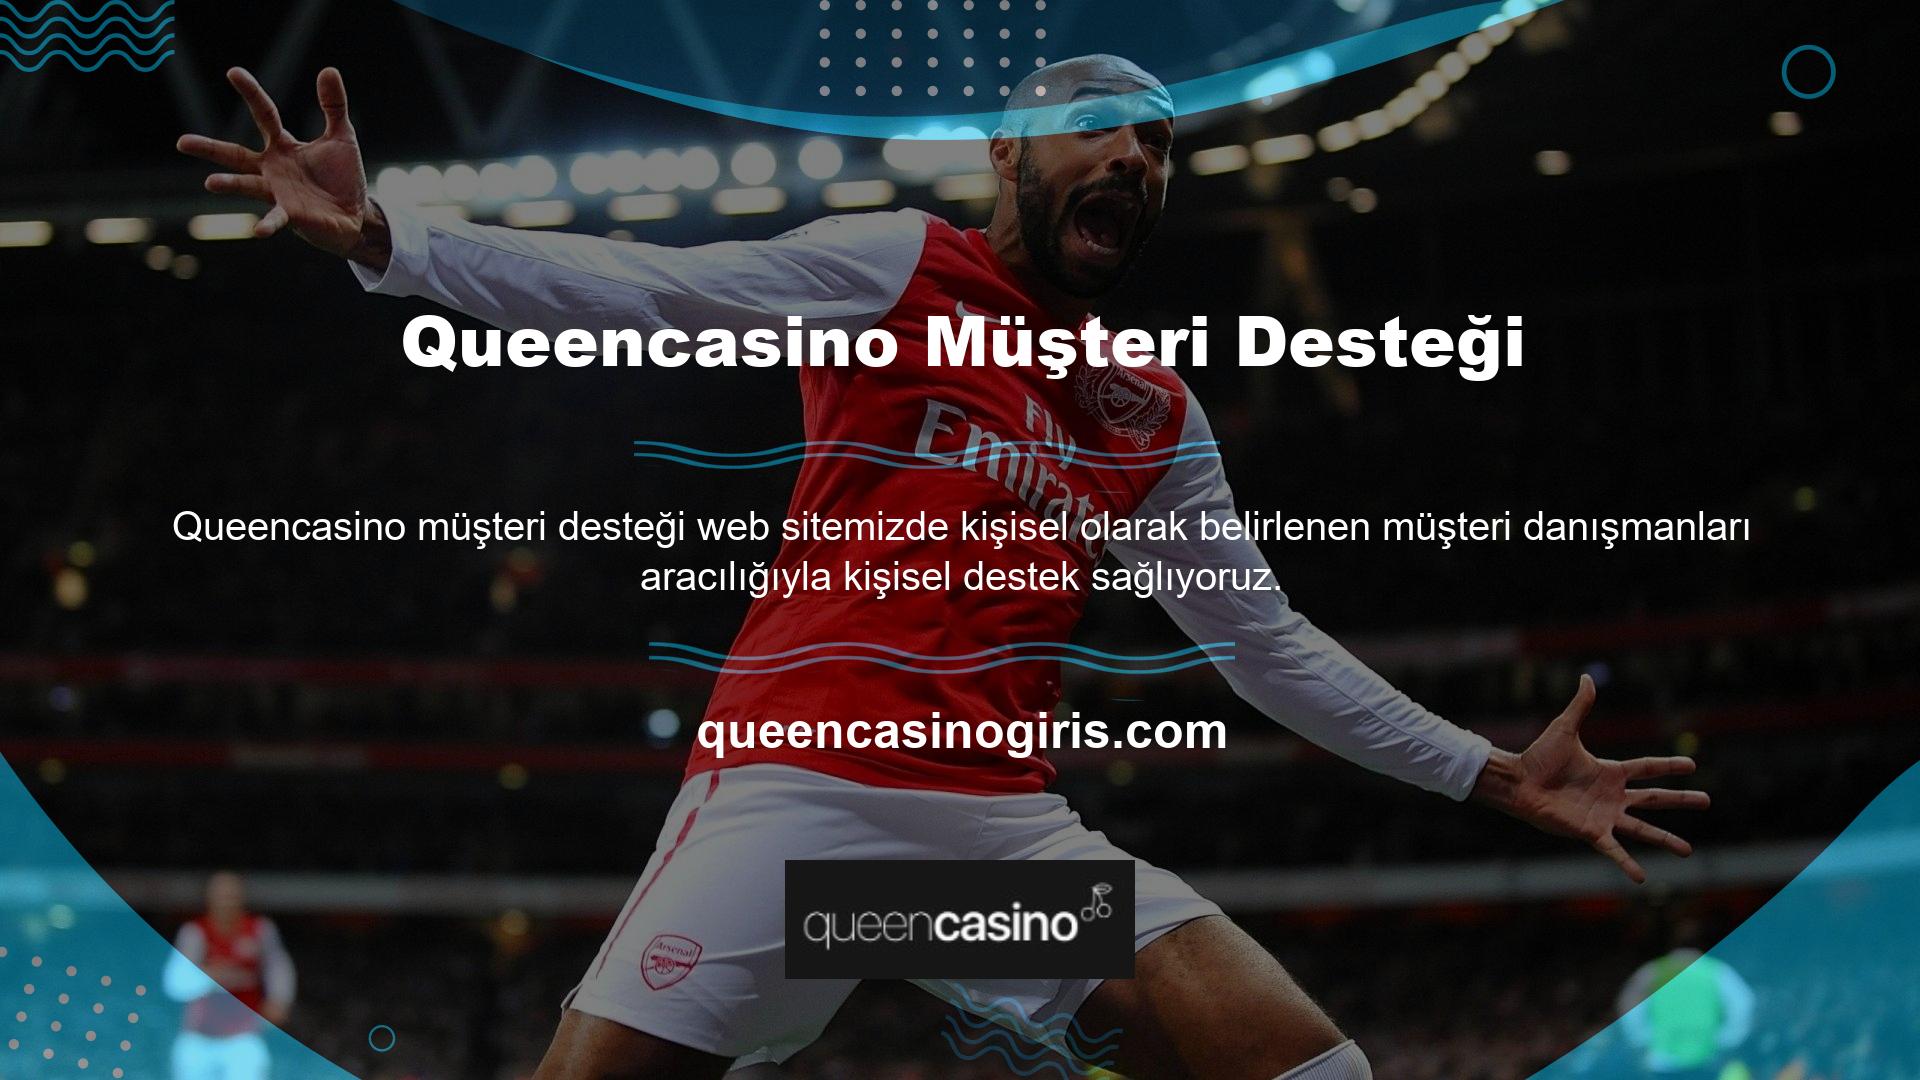 Queencasino web sitesi eşsiz bir fırsat sunuyor